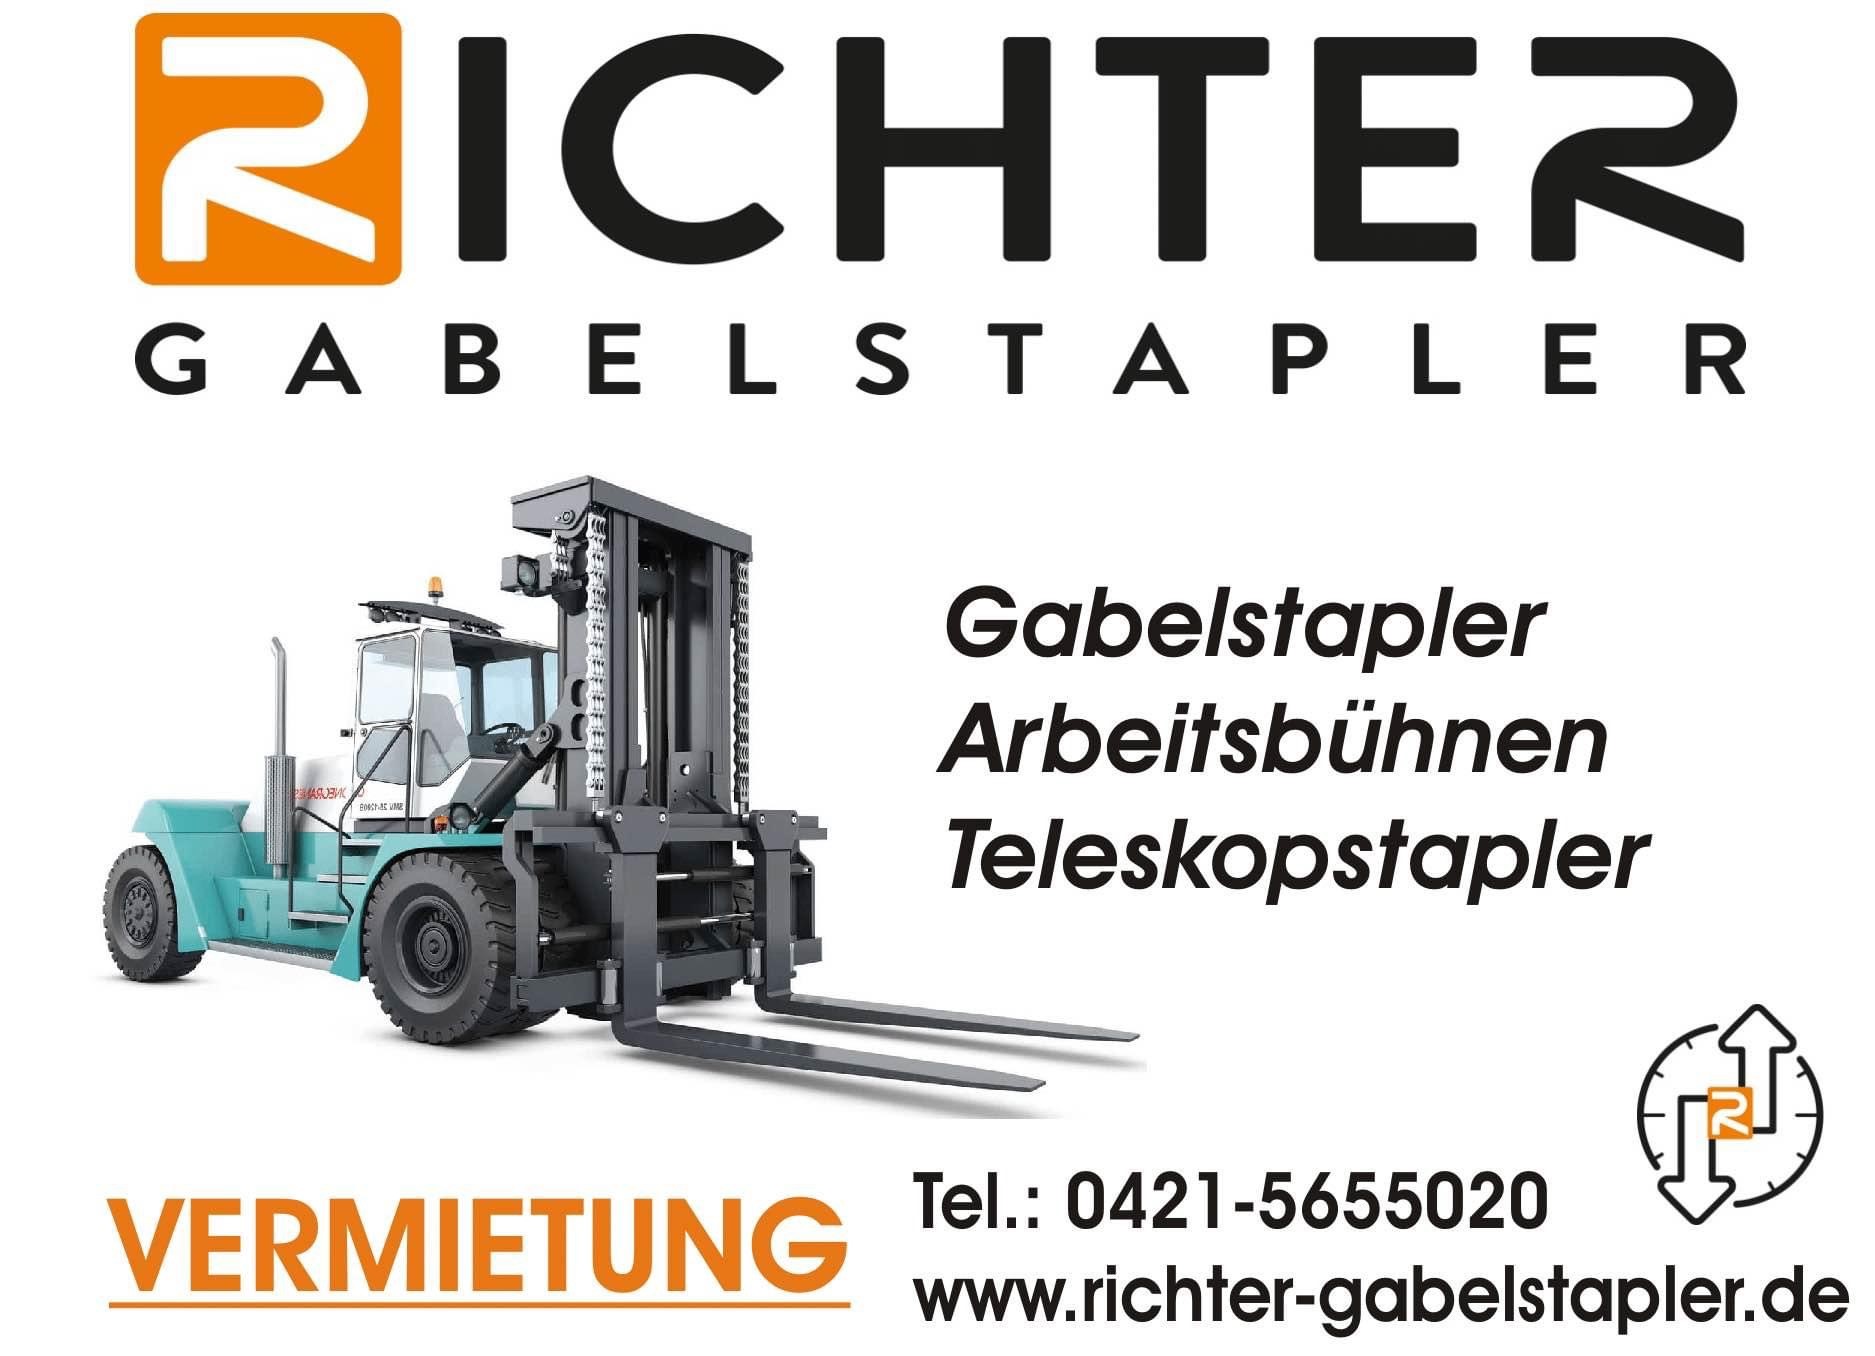 Richter Gabelstapler GmbH & Co.KG, Mietservice